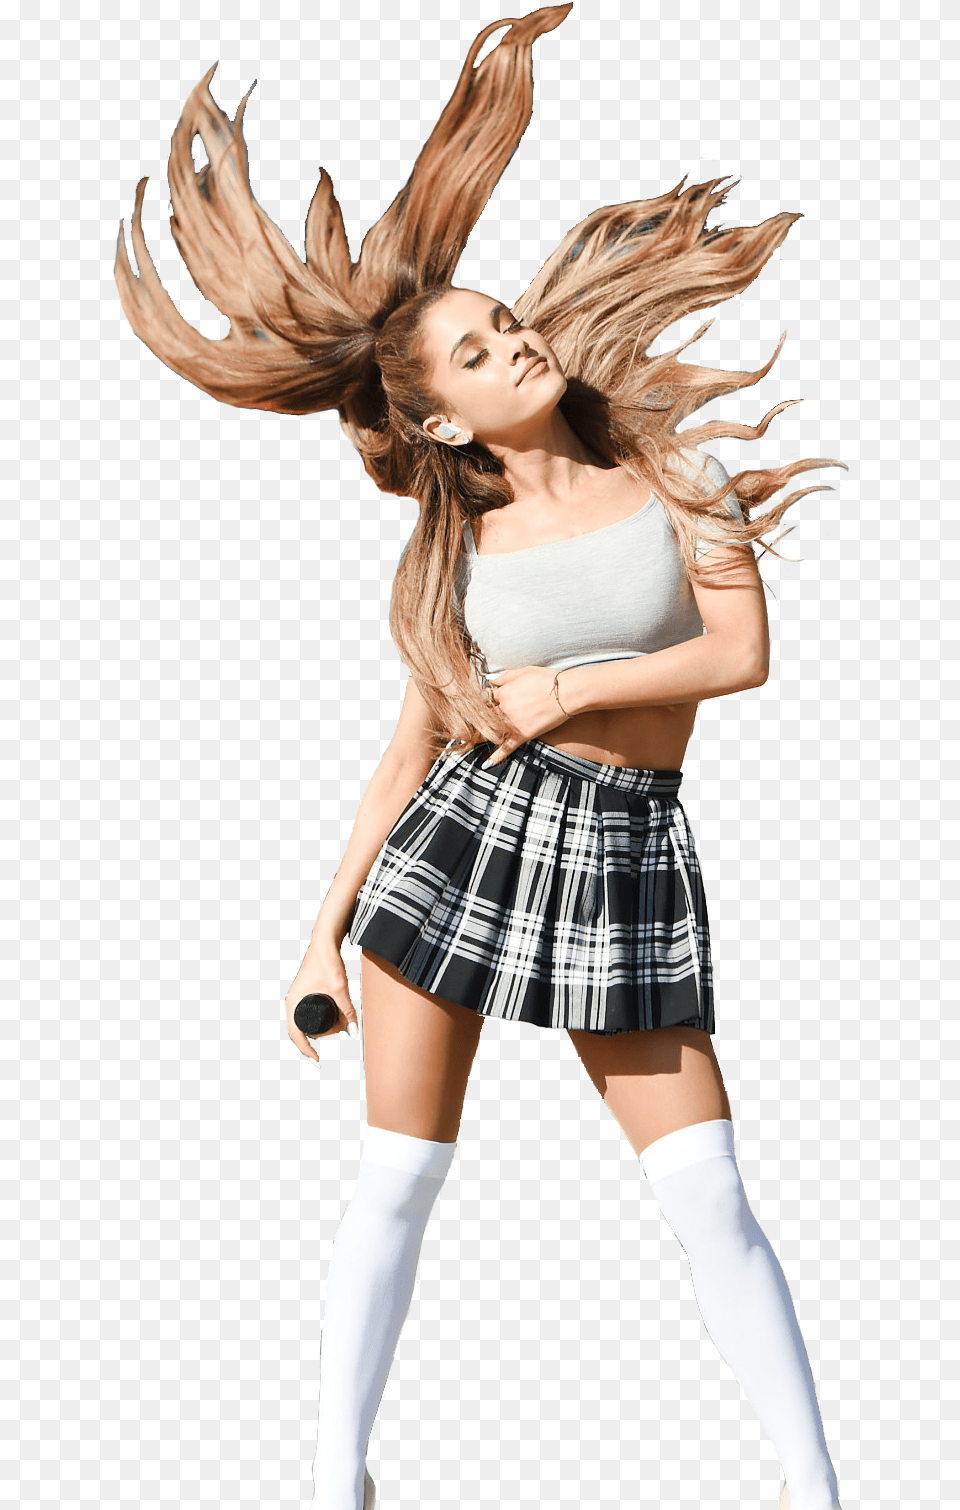 Ariana Grande Hd, Clothing, Skirt, Female, Girl Png